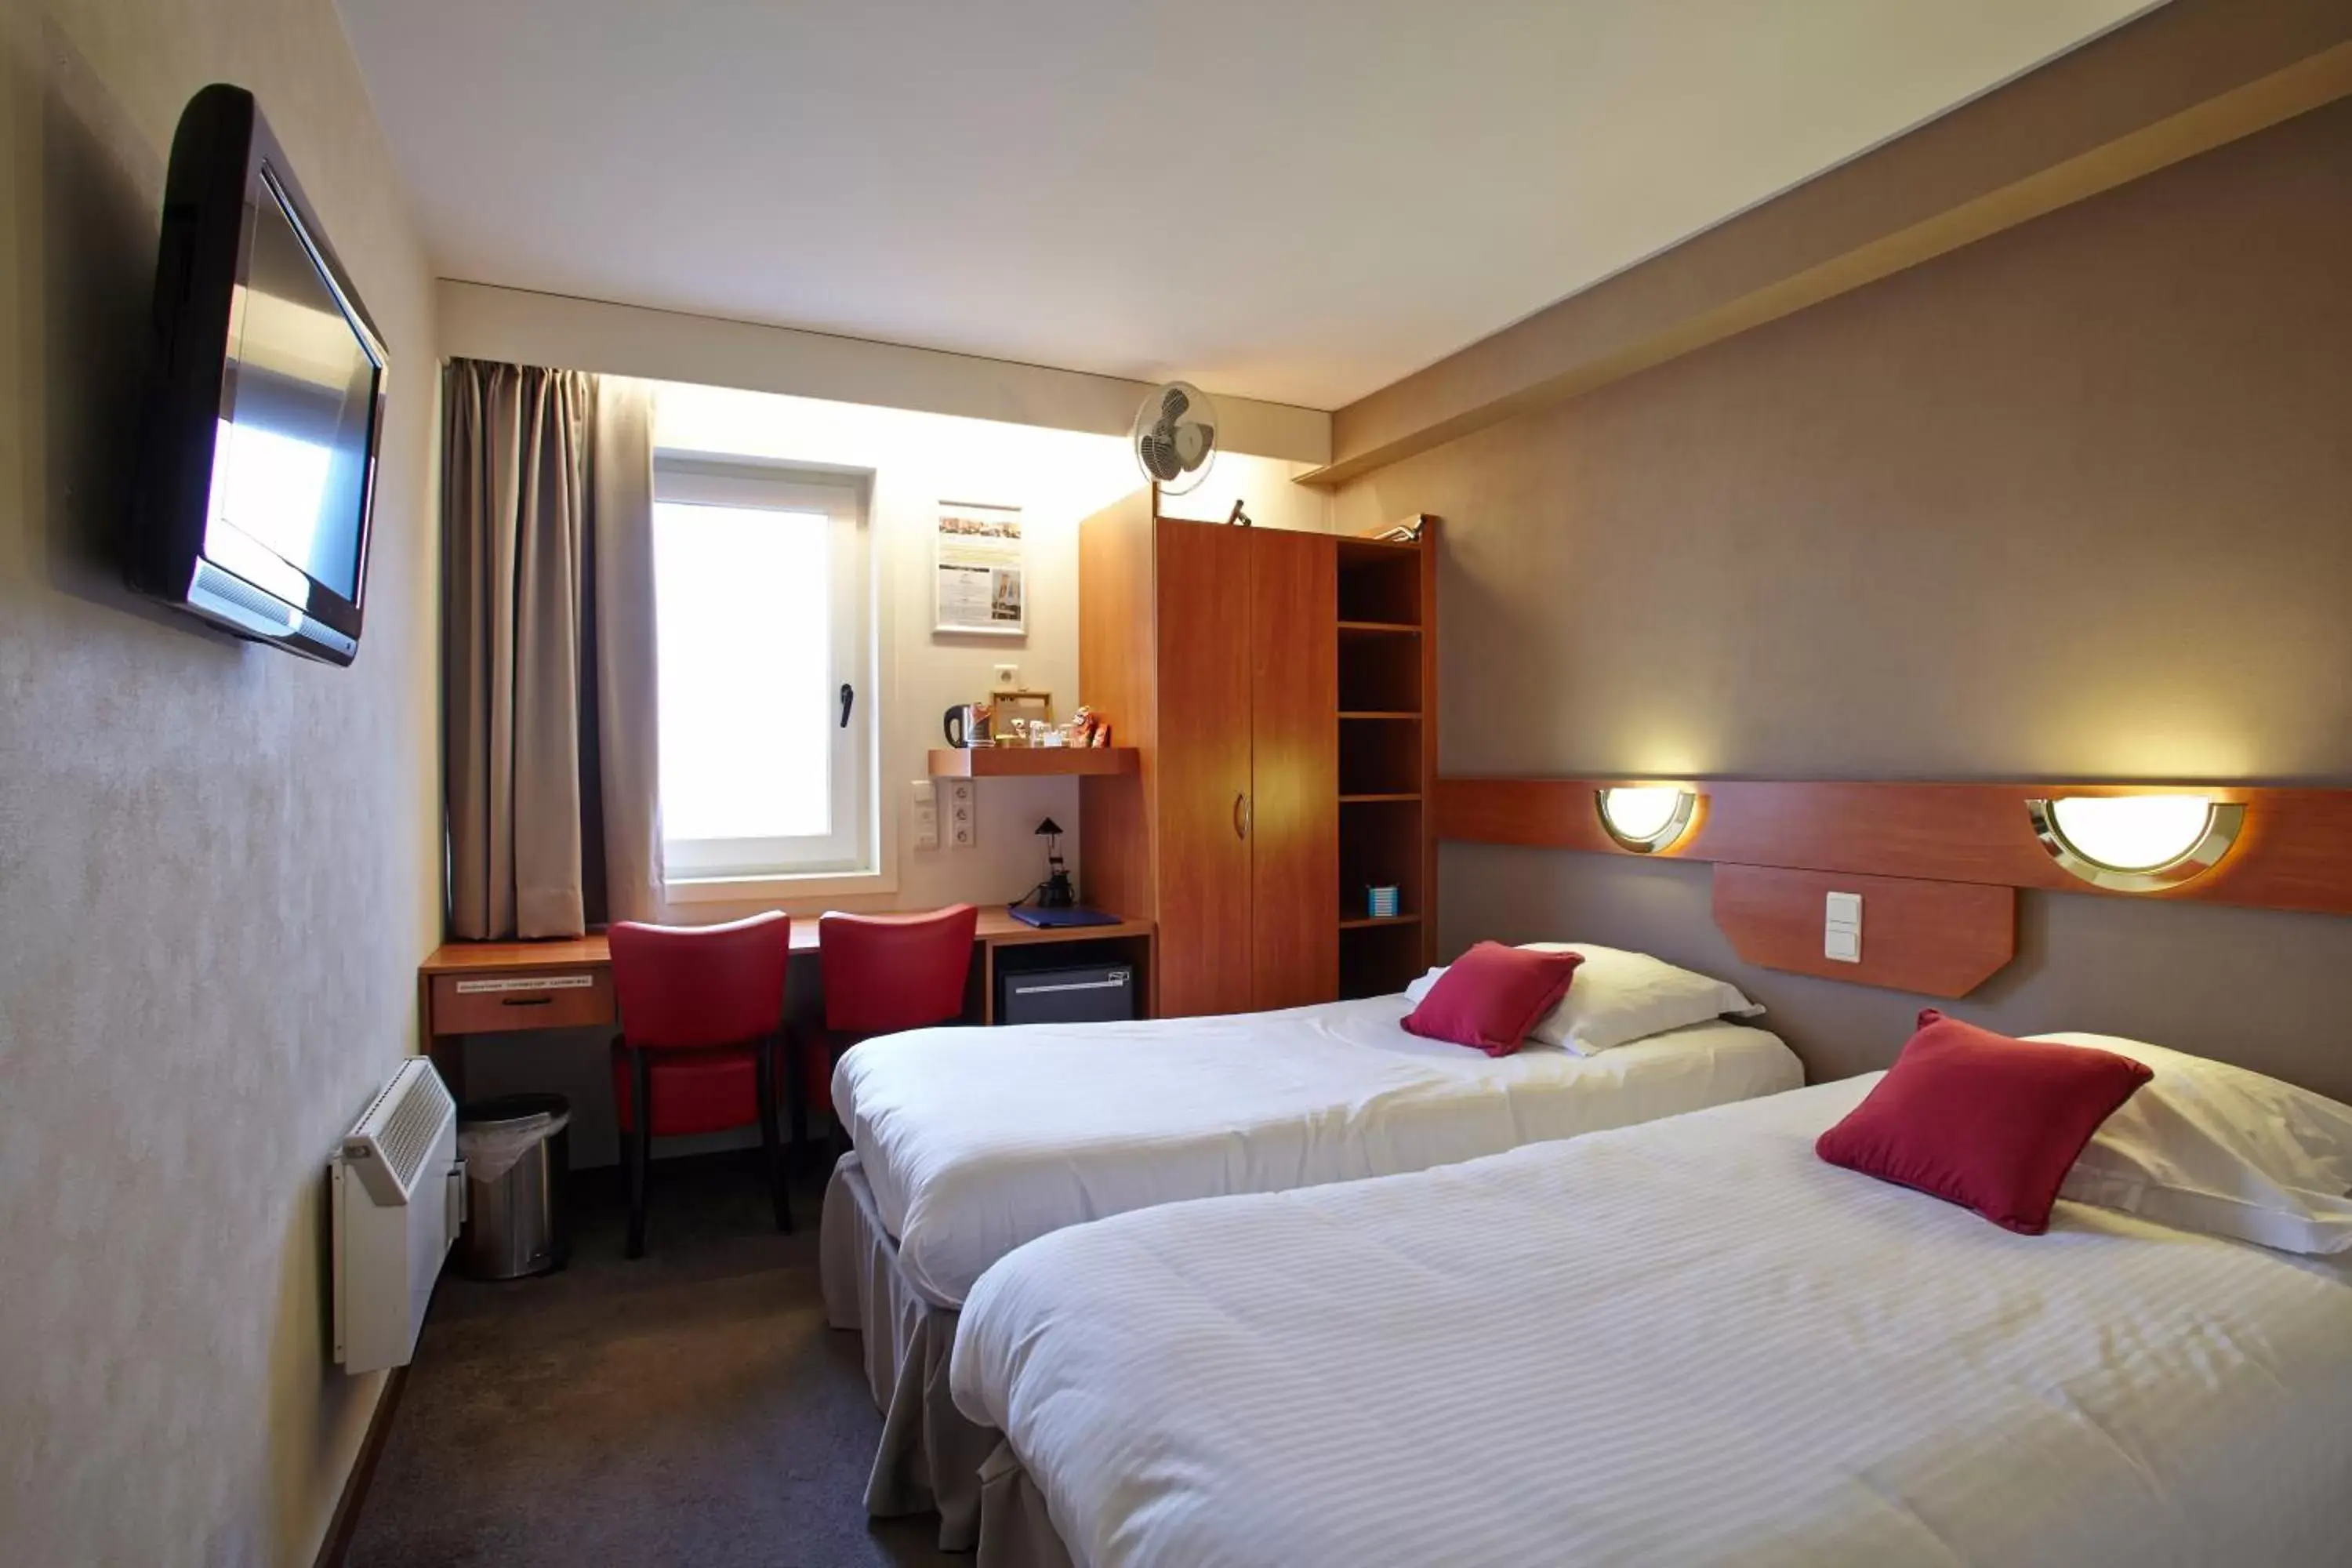 Bedroom, Bed in Vivaldi Hotel